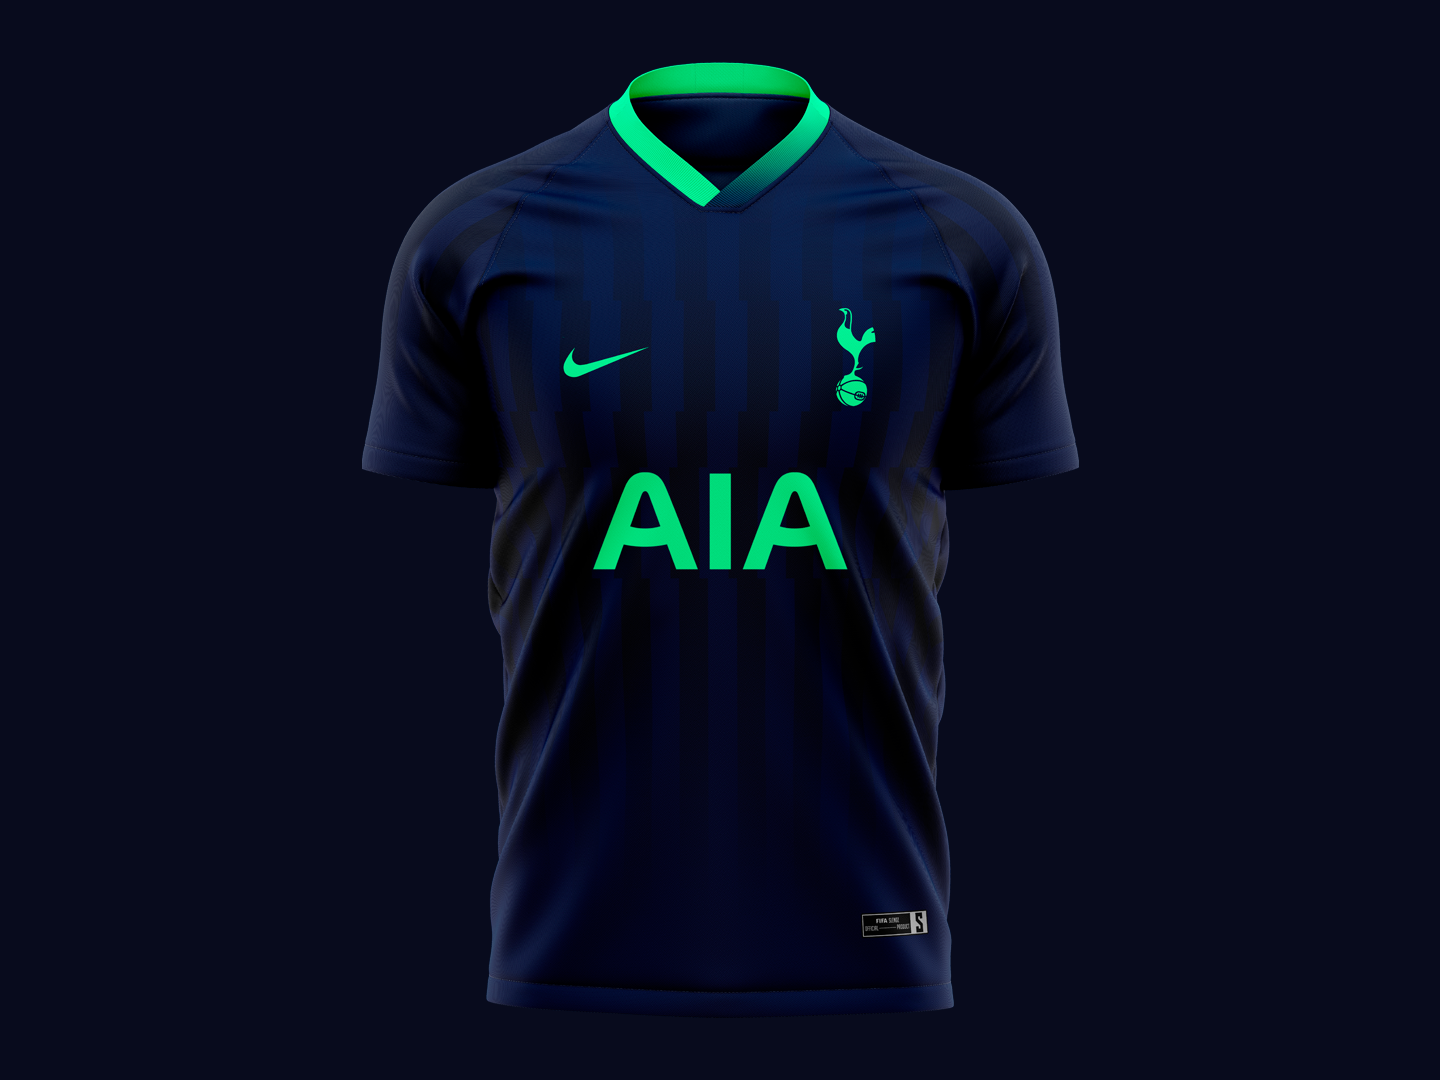 2019 football jersey design